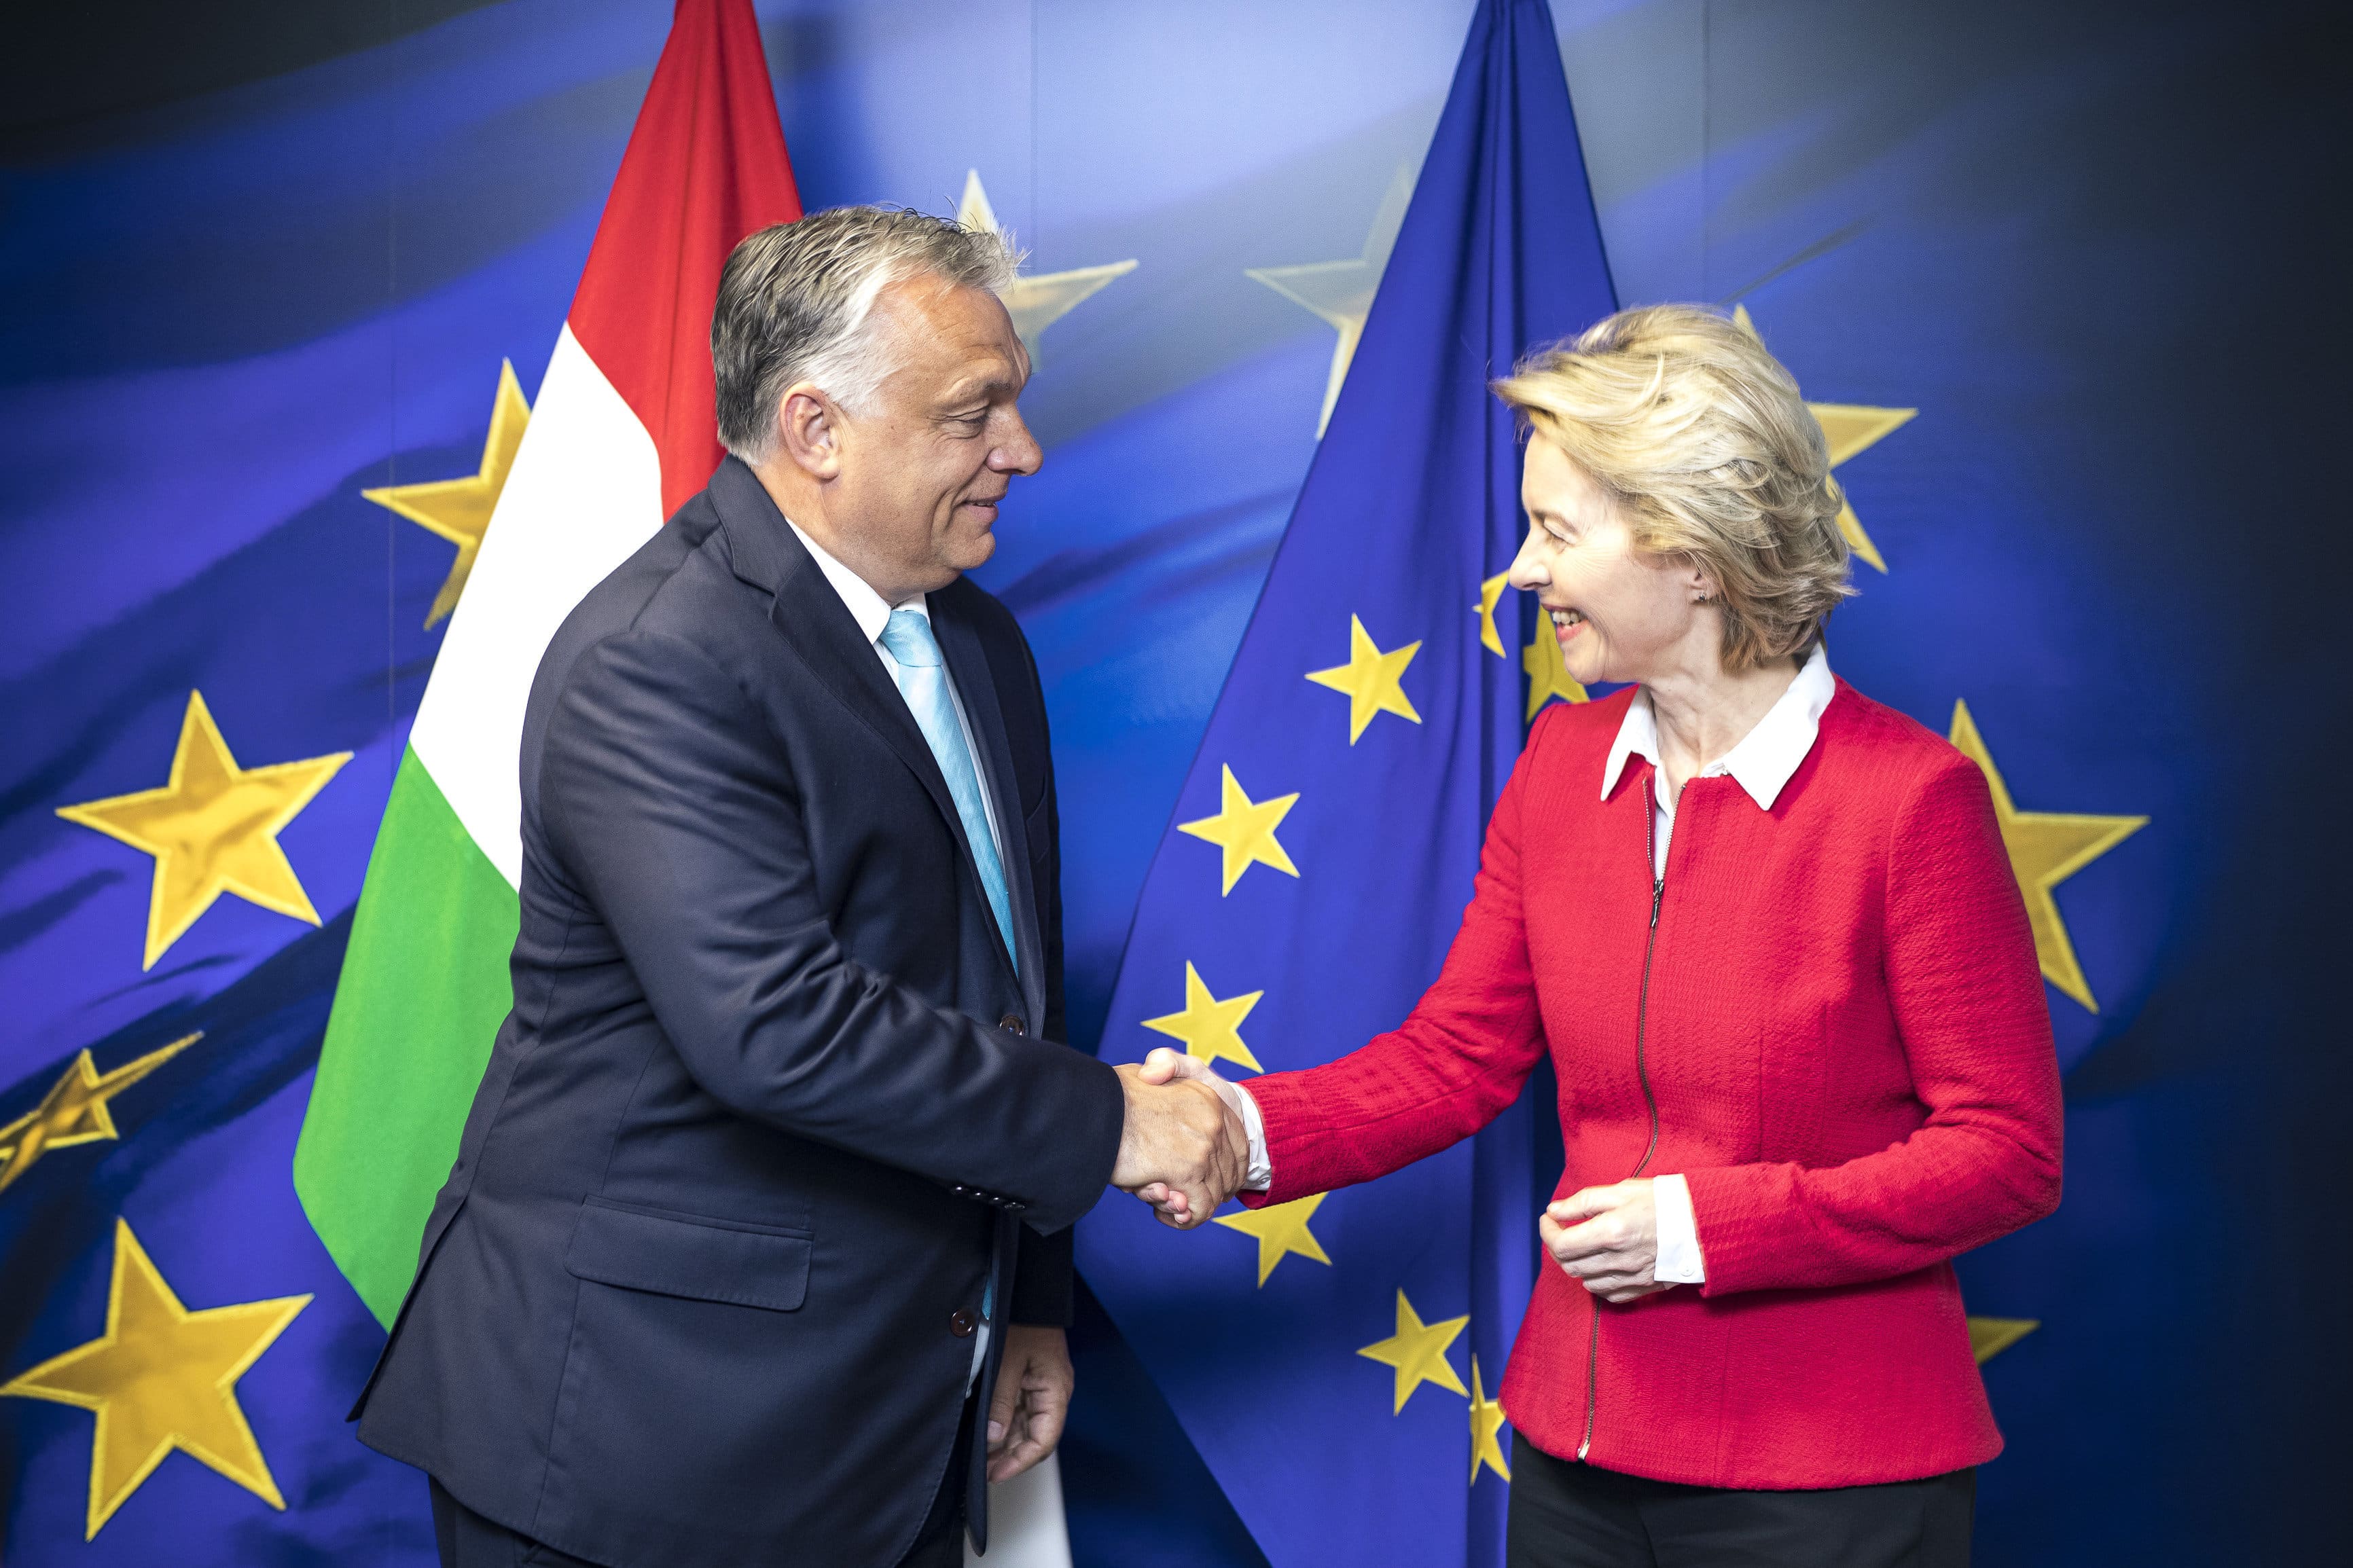 Von der Leyen meets with Orbán in Brussels